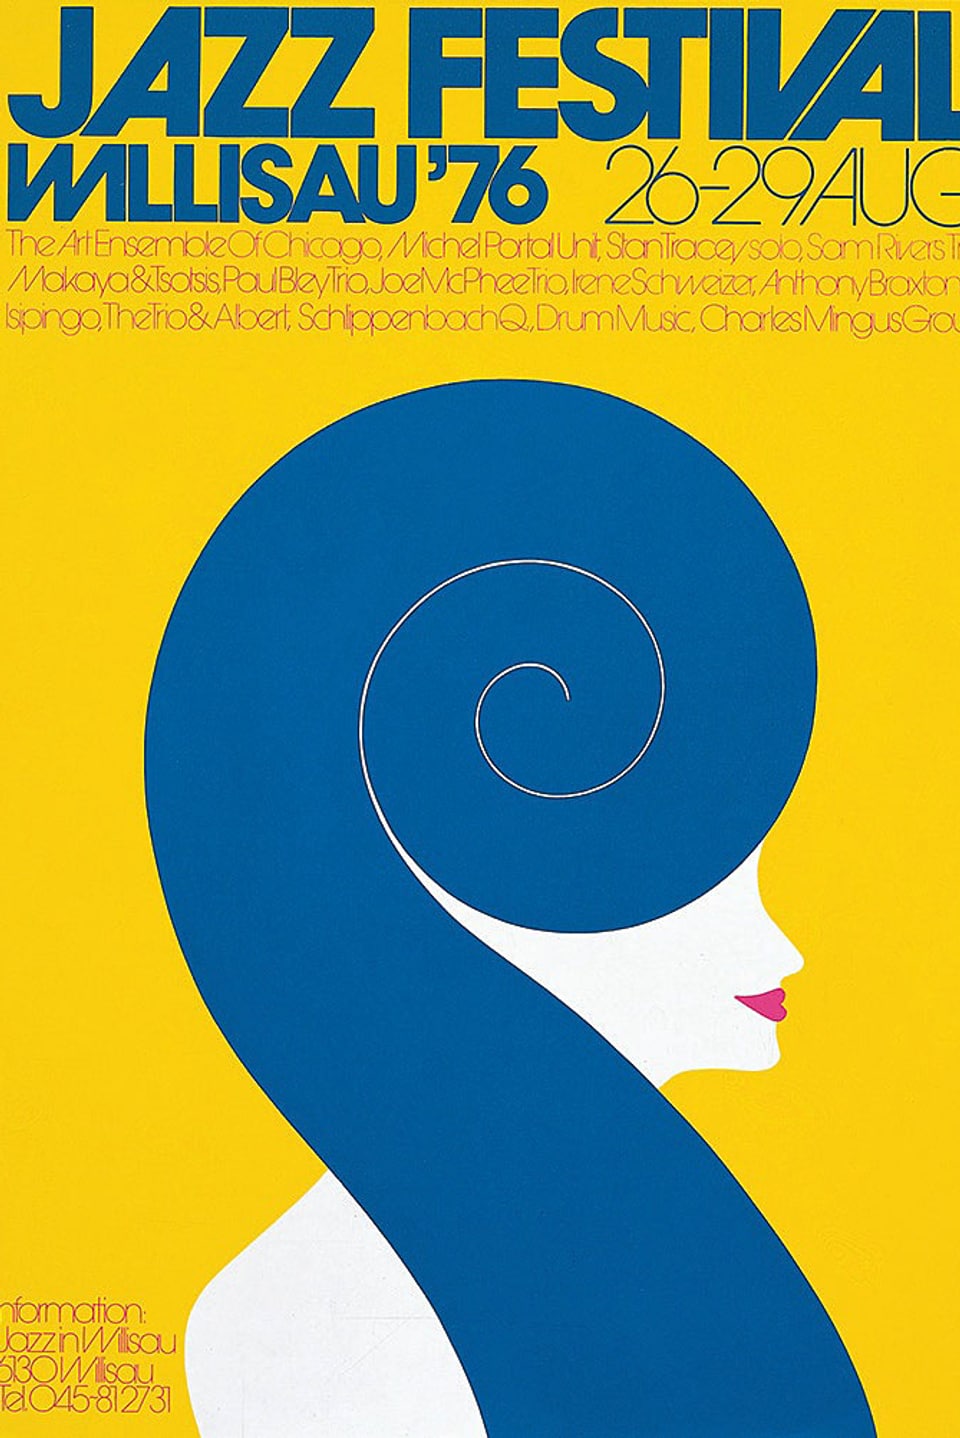 Das Plakat von 1976 zeigt die Zeichnung einer Frau, deren Haare wie die Schnecke eines Saiteninstrumentes verlaufen.